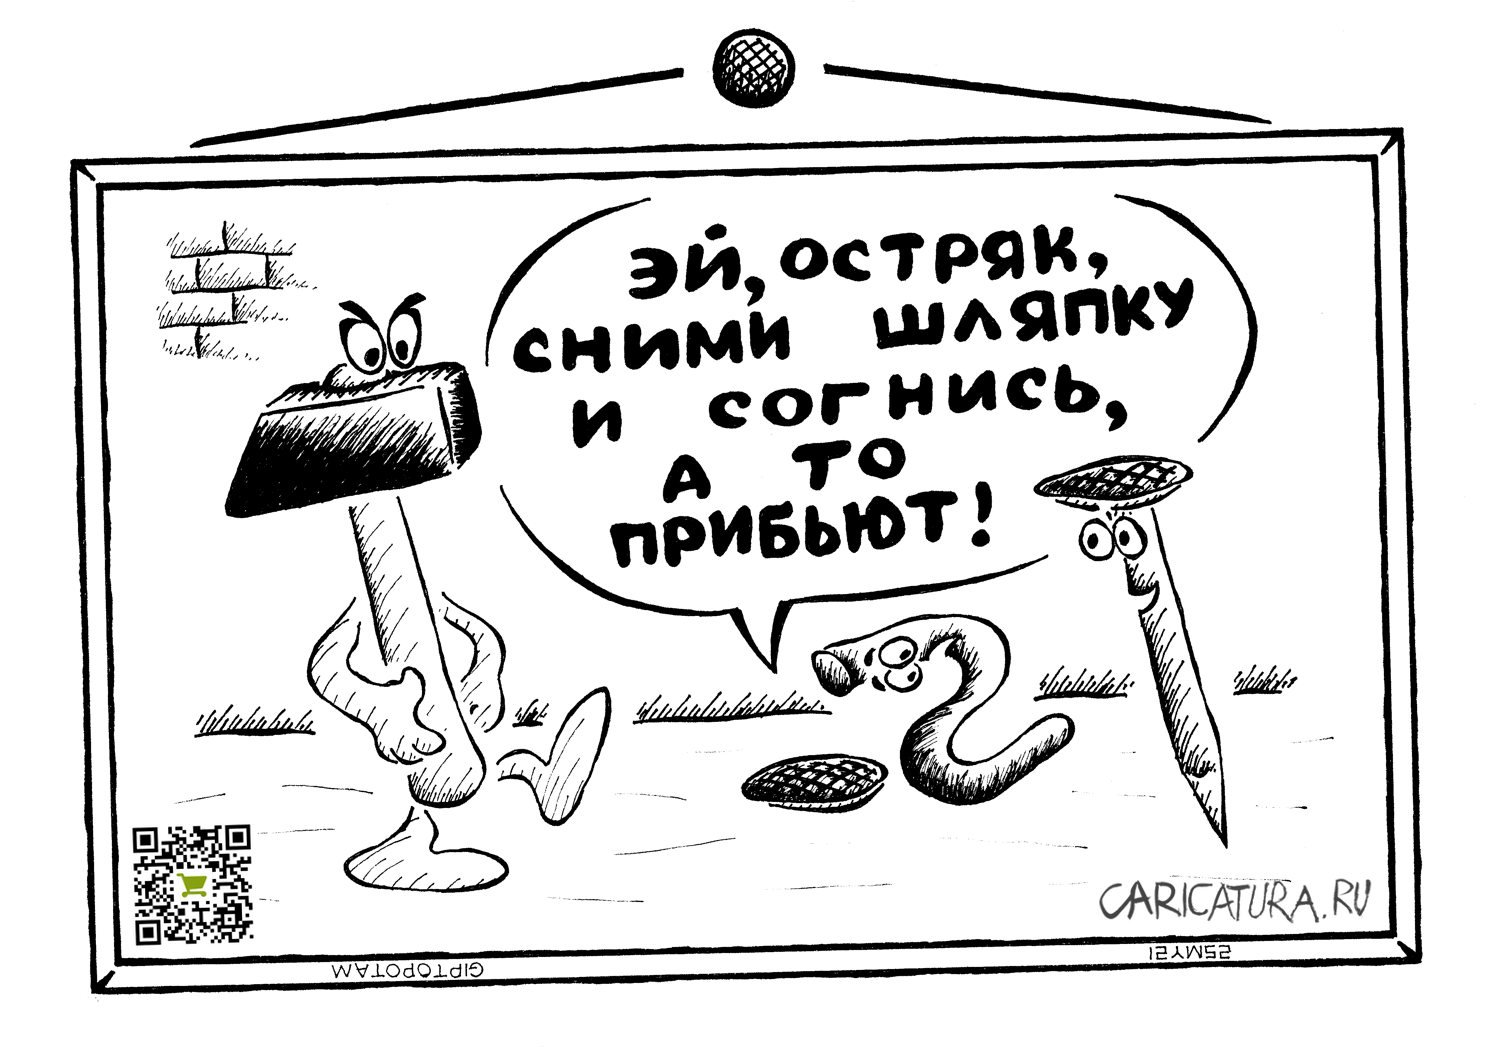 Карикатура "Таланты и поклон...чики", Александр Евангелистов